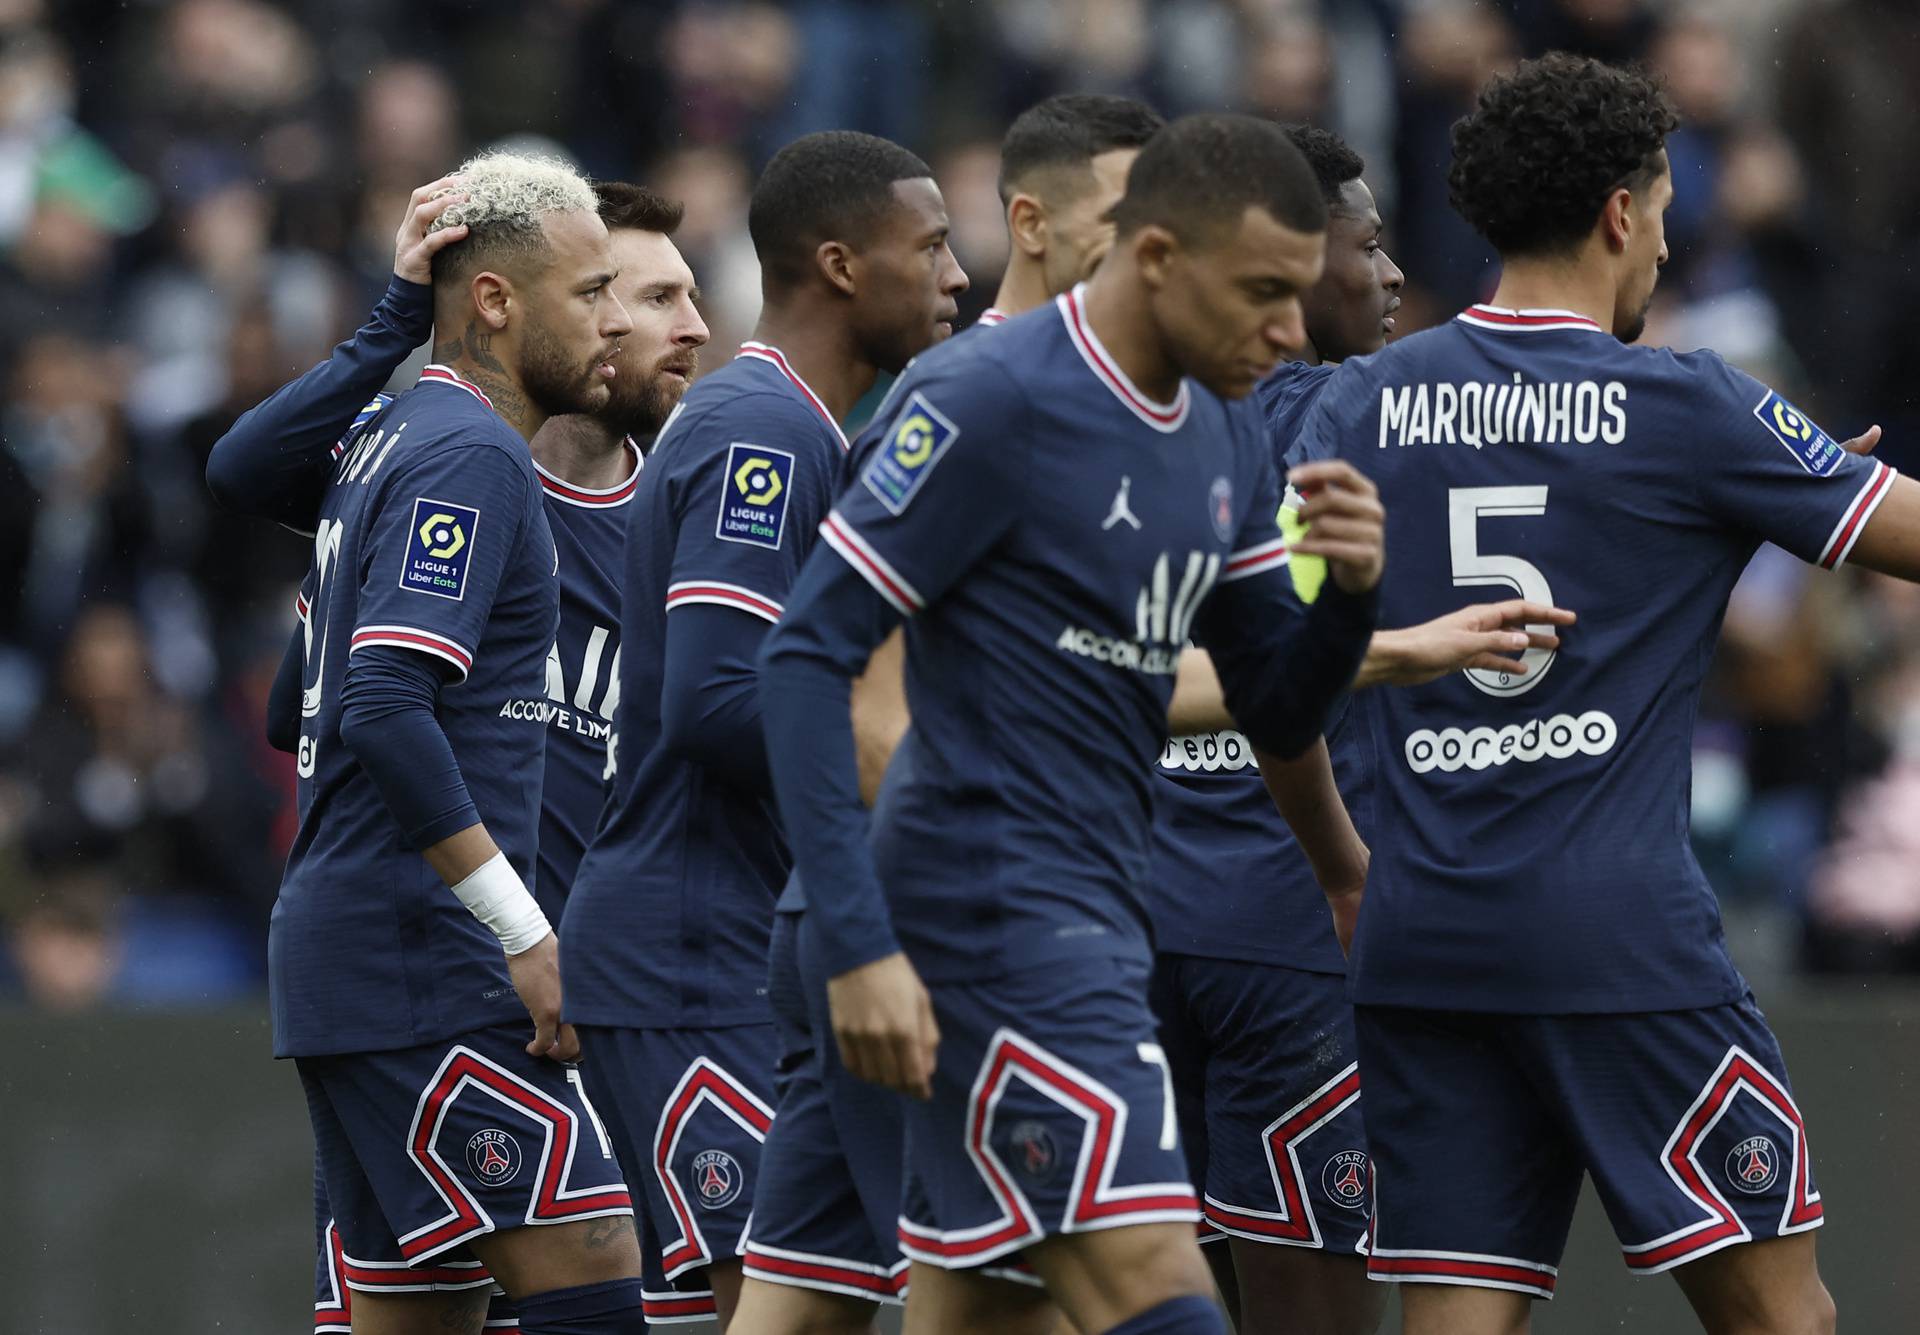 Ligue 1 - Paris St Germain v Bordeaux